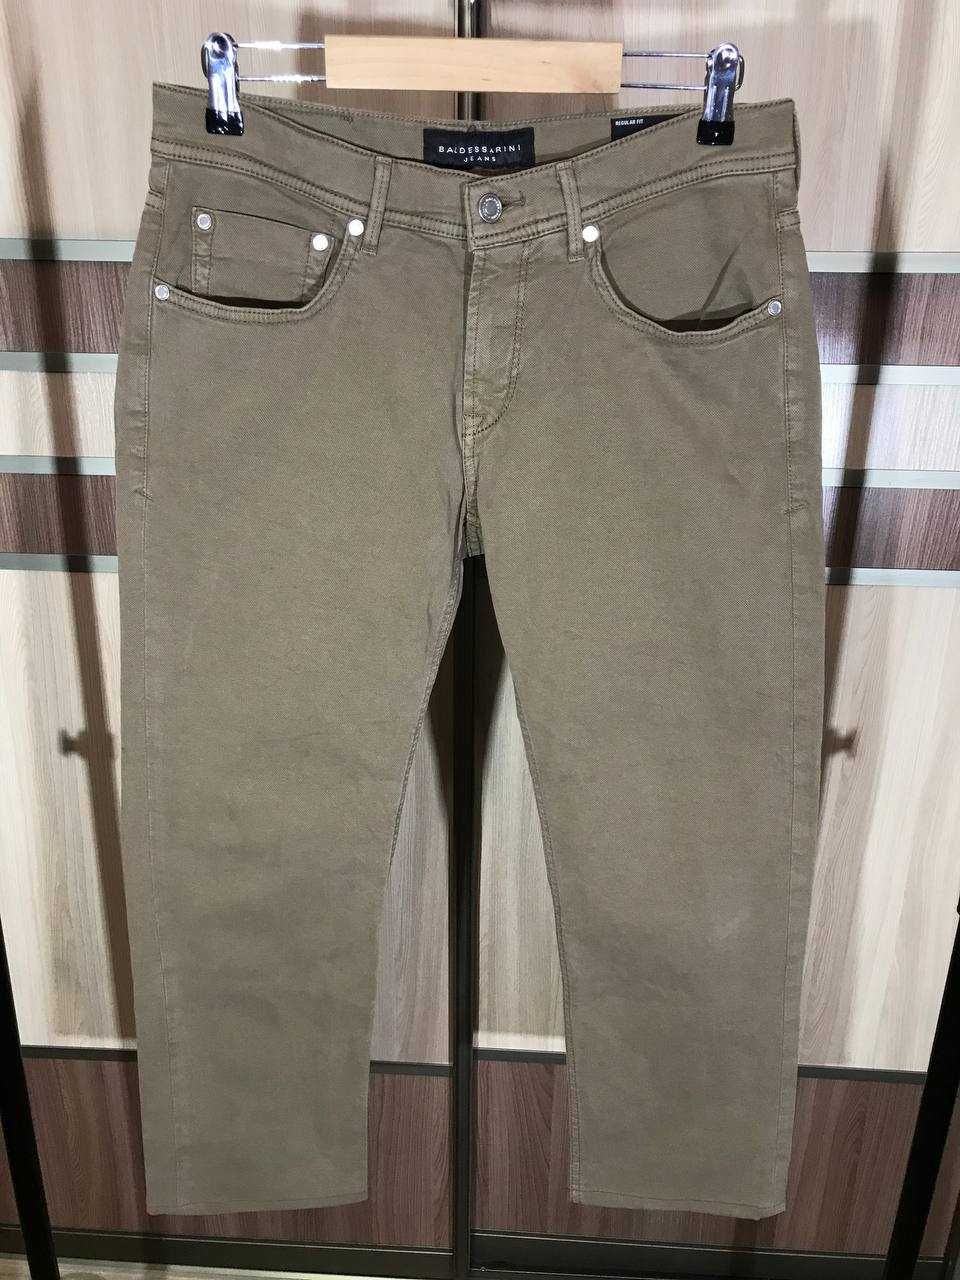 Мужские джинсы штаны Baldessarini jeans Size 31/34 оригинал